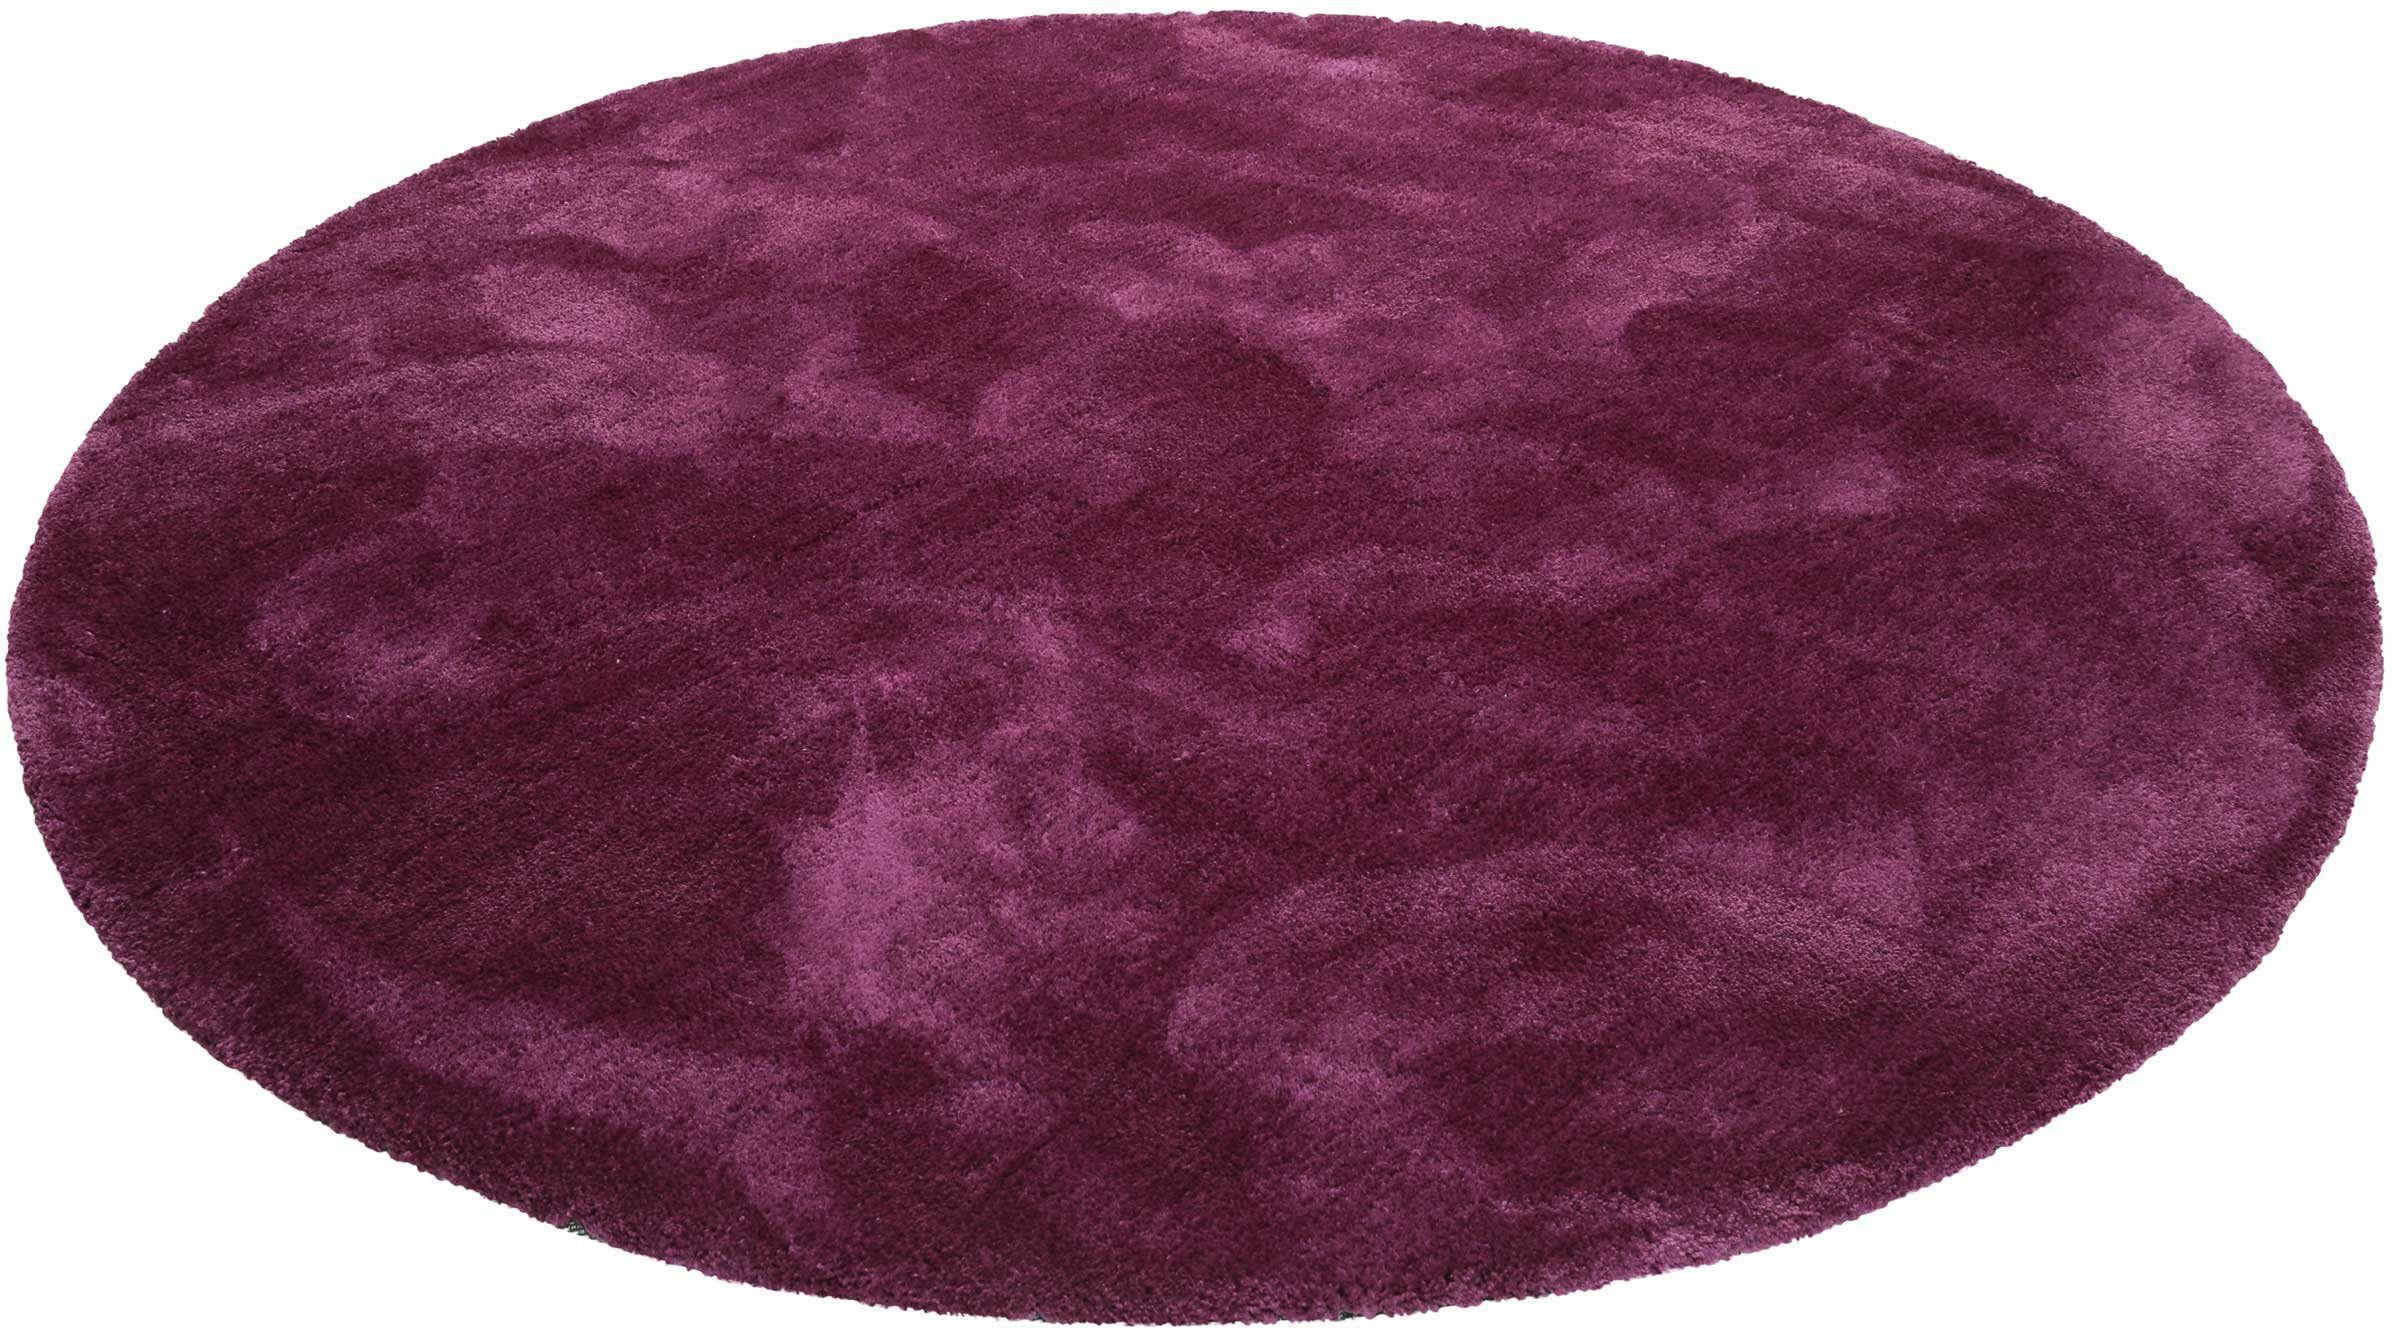 Hochflor-Teppich Relaxx, Esprit, rund, Höhe: 25 mm, Wohnzimmer, sehr große Farbauswahl, weicher dichter Hochflor